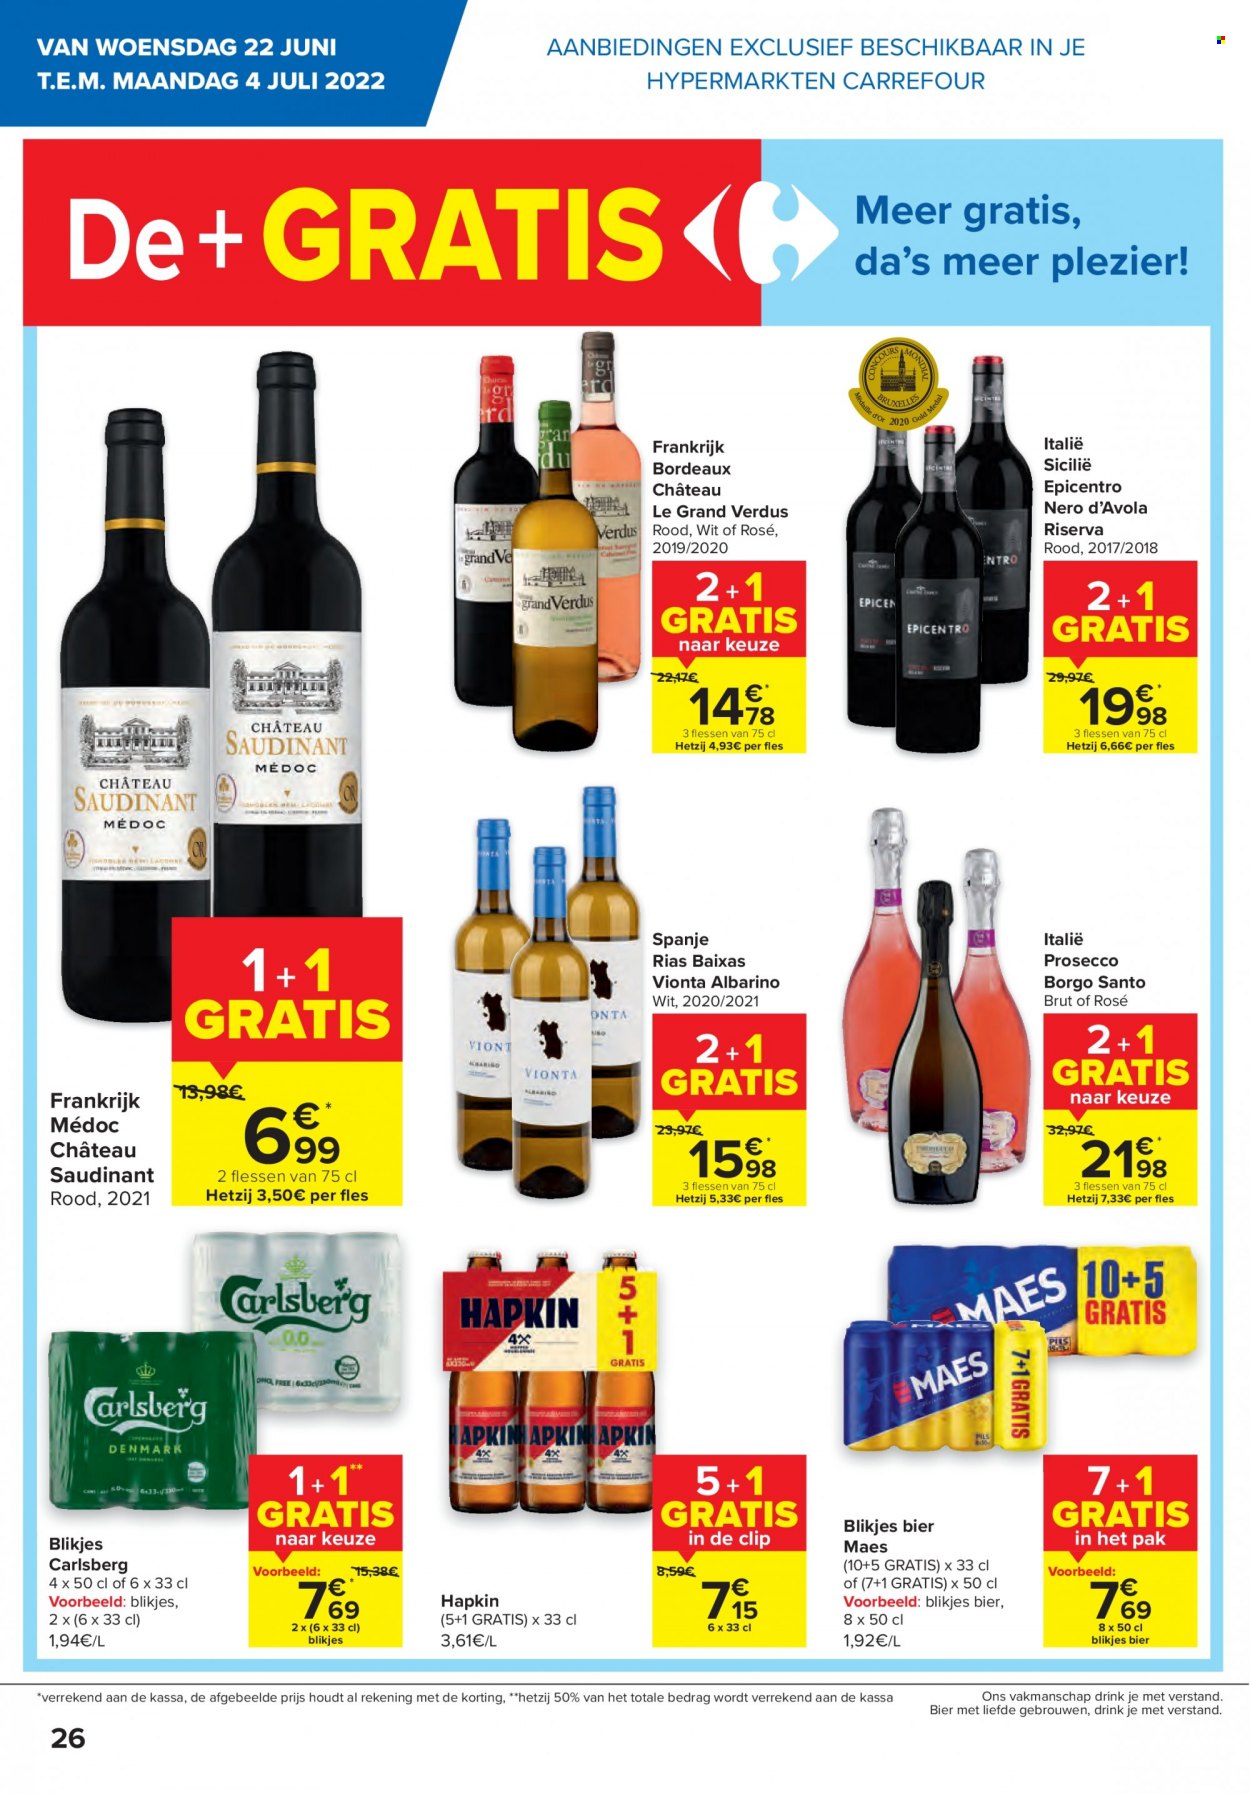 thumbnail - Catalogue Carrefour hypermarkt - 22/06/2022 - 04/07/2022 - Produits soldés - vin rouge, Bordeaux, alcool, Prosecco. Page 26.